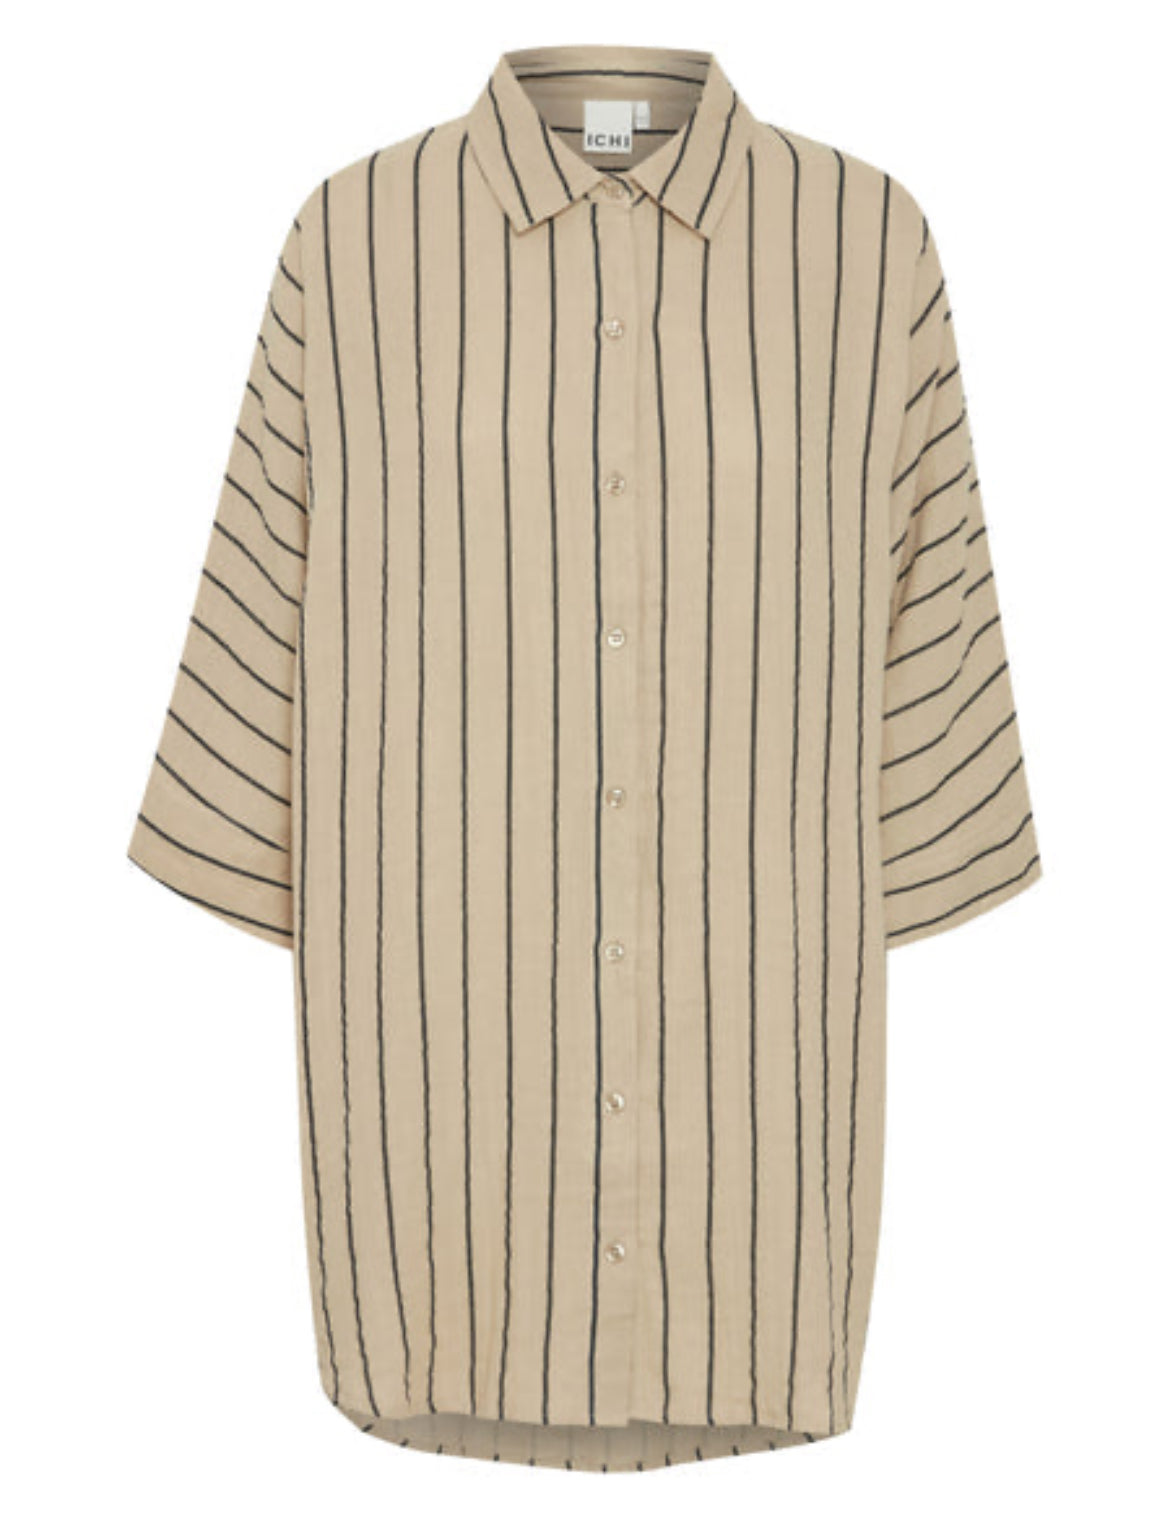 Ichi Striped Beach Shirt